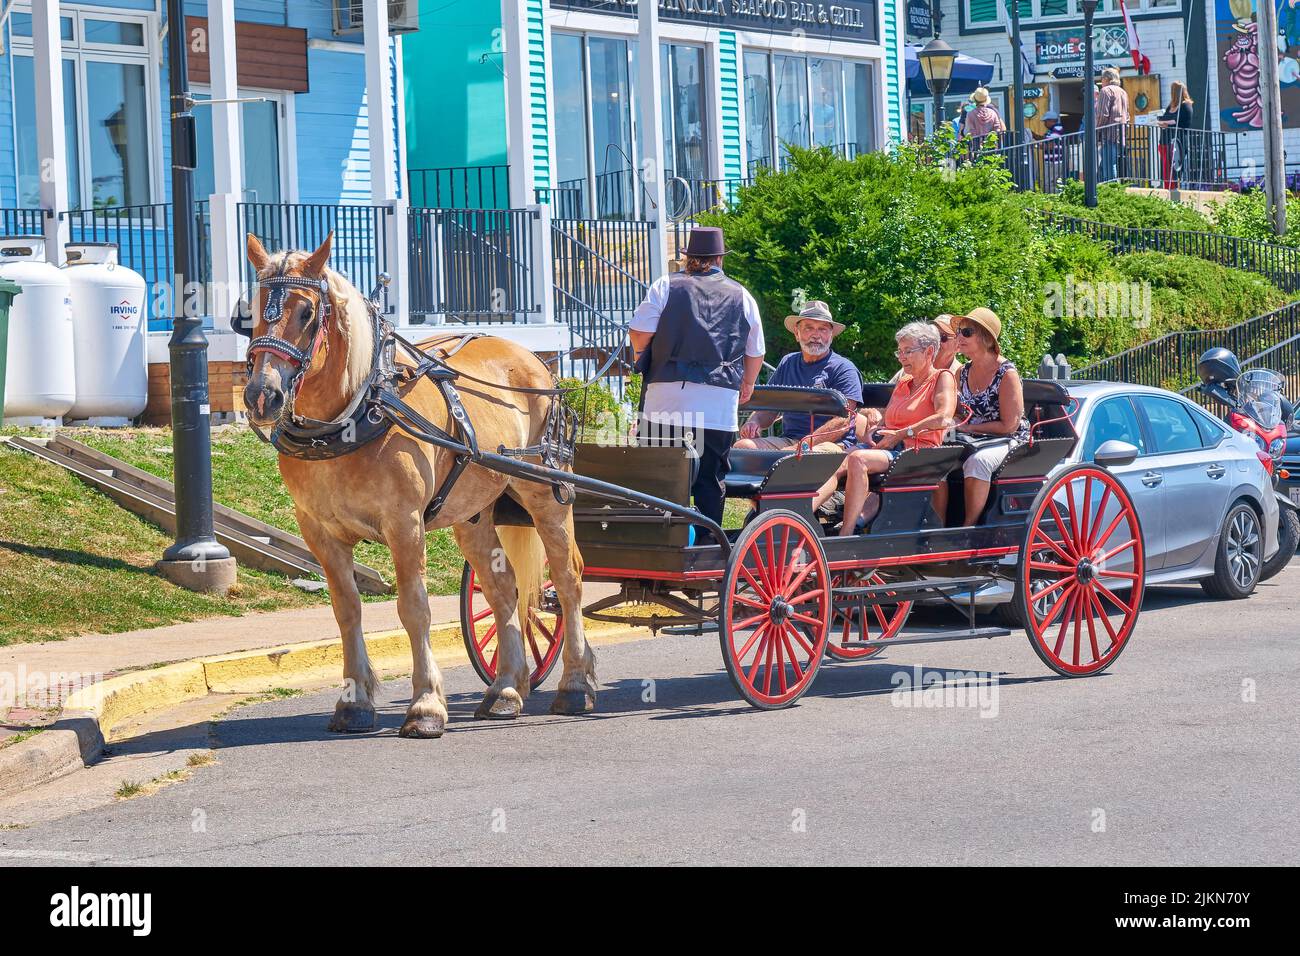 Tourist enjoy a horse drawn carriage tour of historic Lunenburg Nova Scotia. Stock Photo